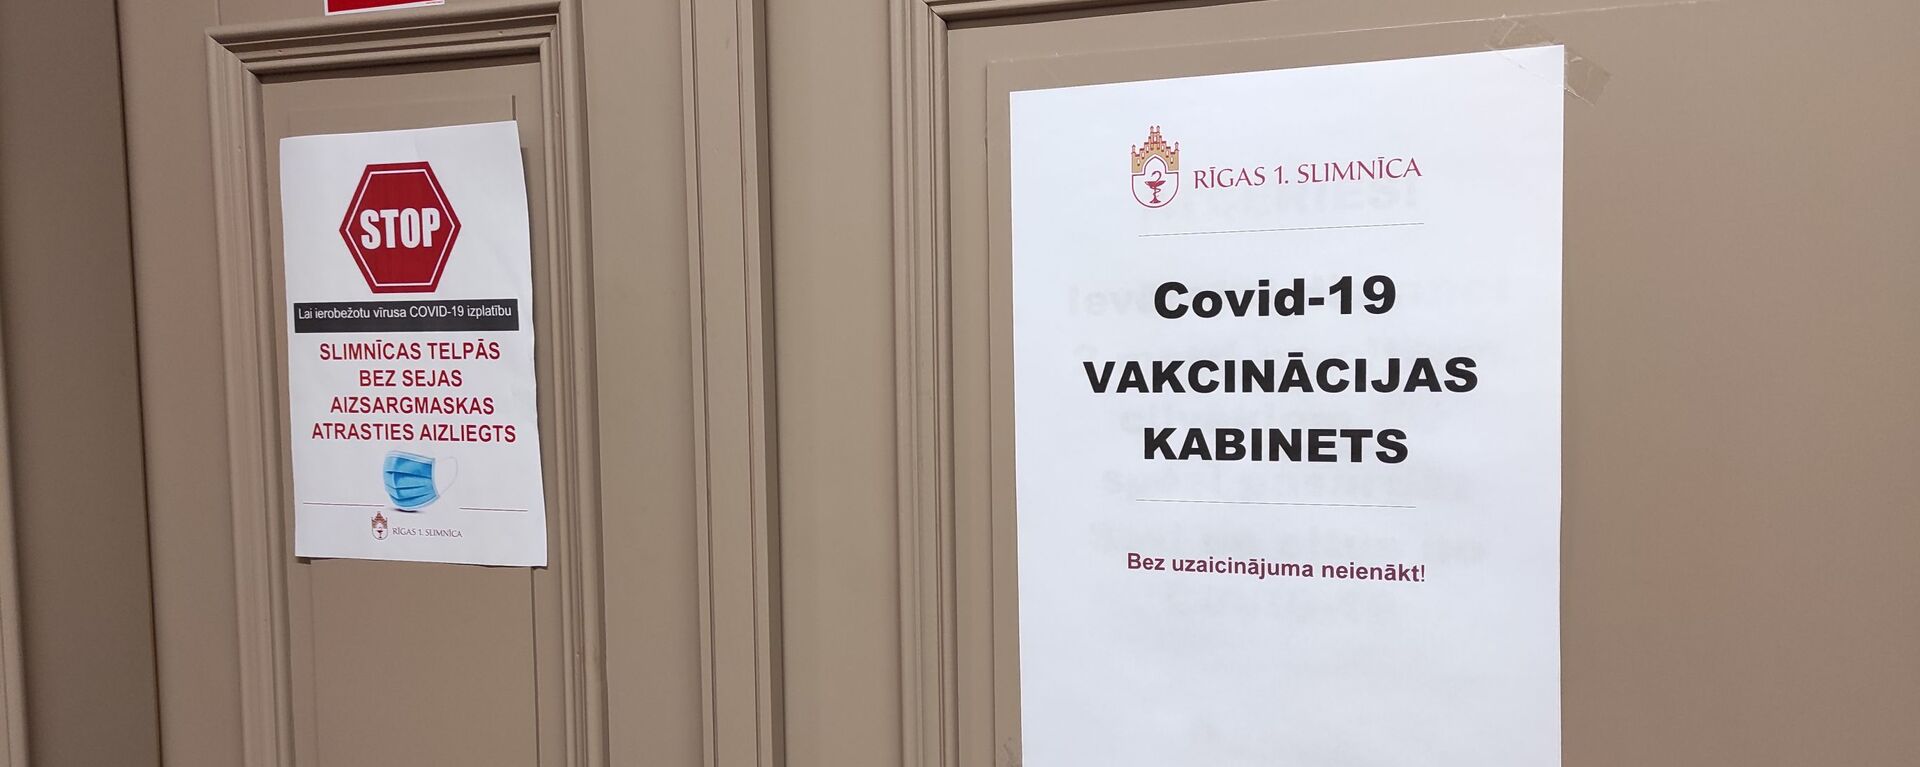 Кабинет вакцинации в Первой городской больнице Риги  - Sputnik Латвия, 1920, 05.02.2021